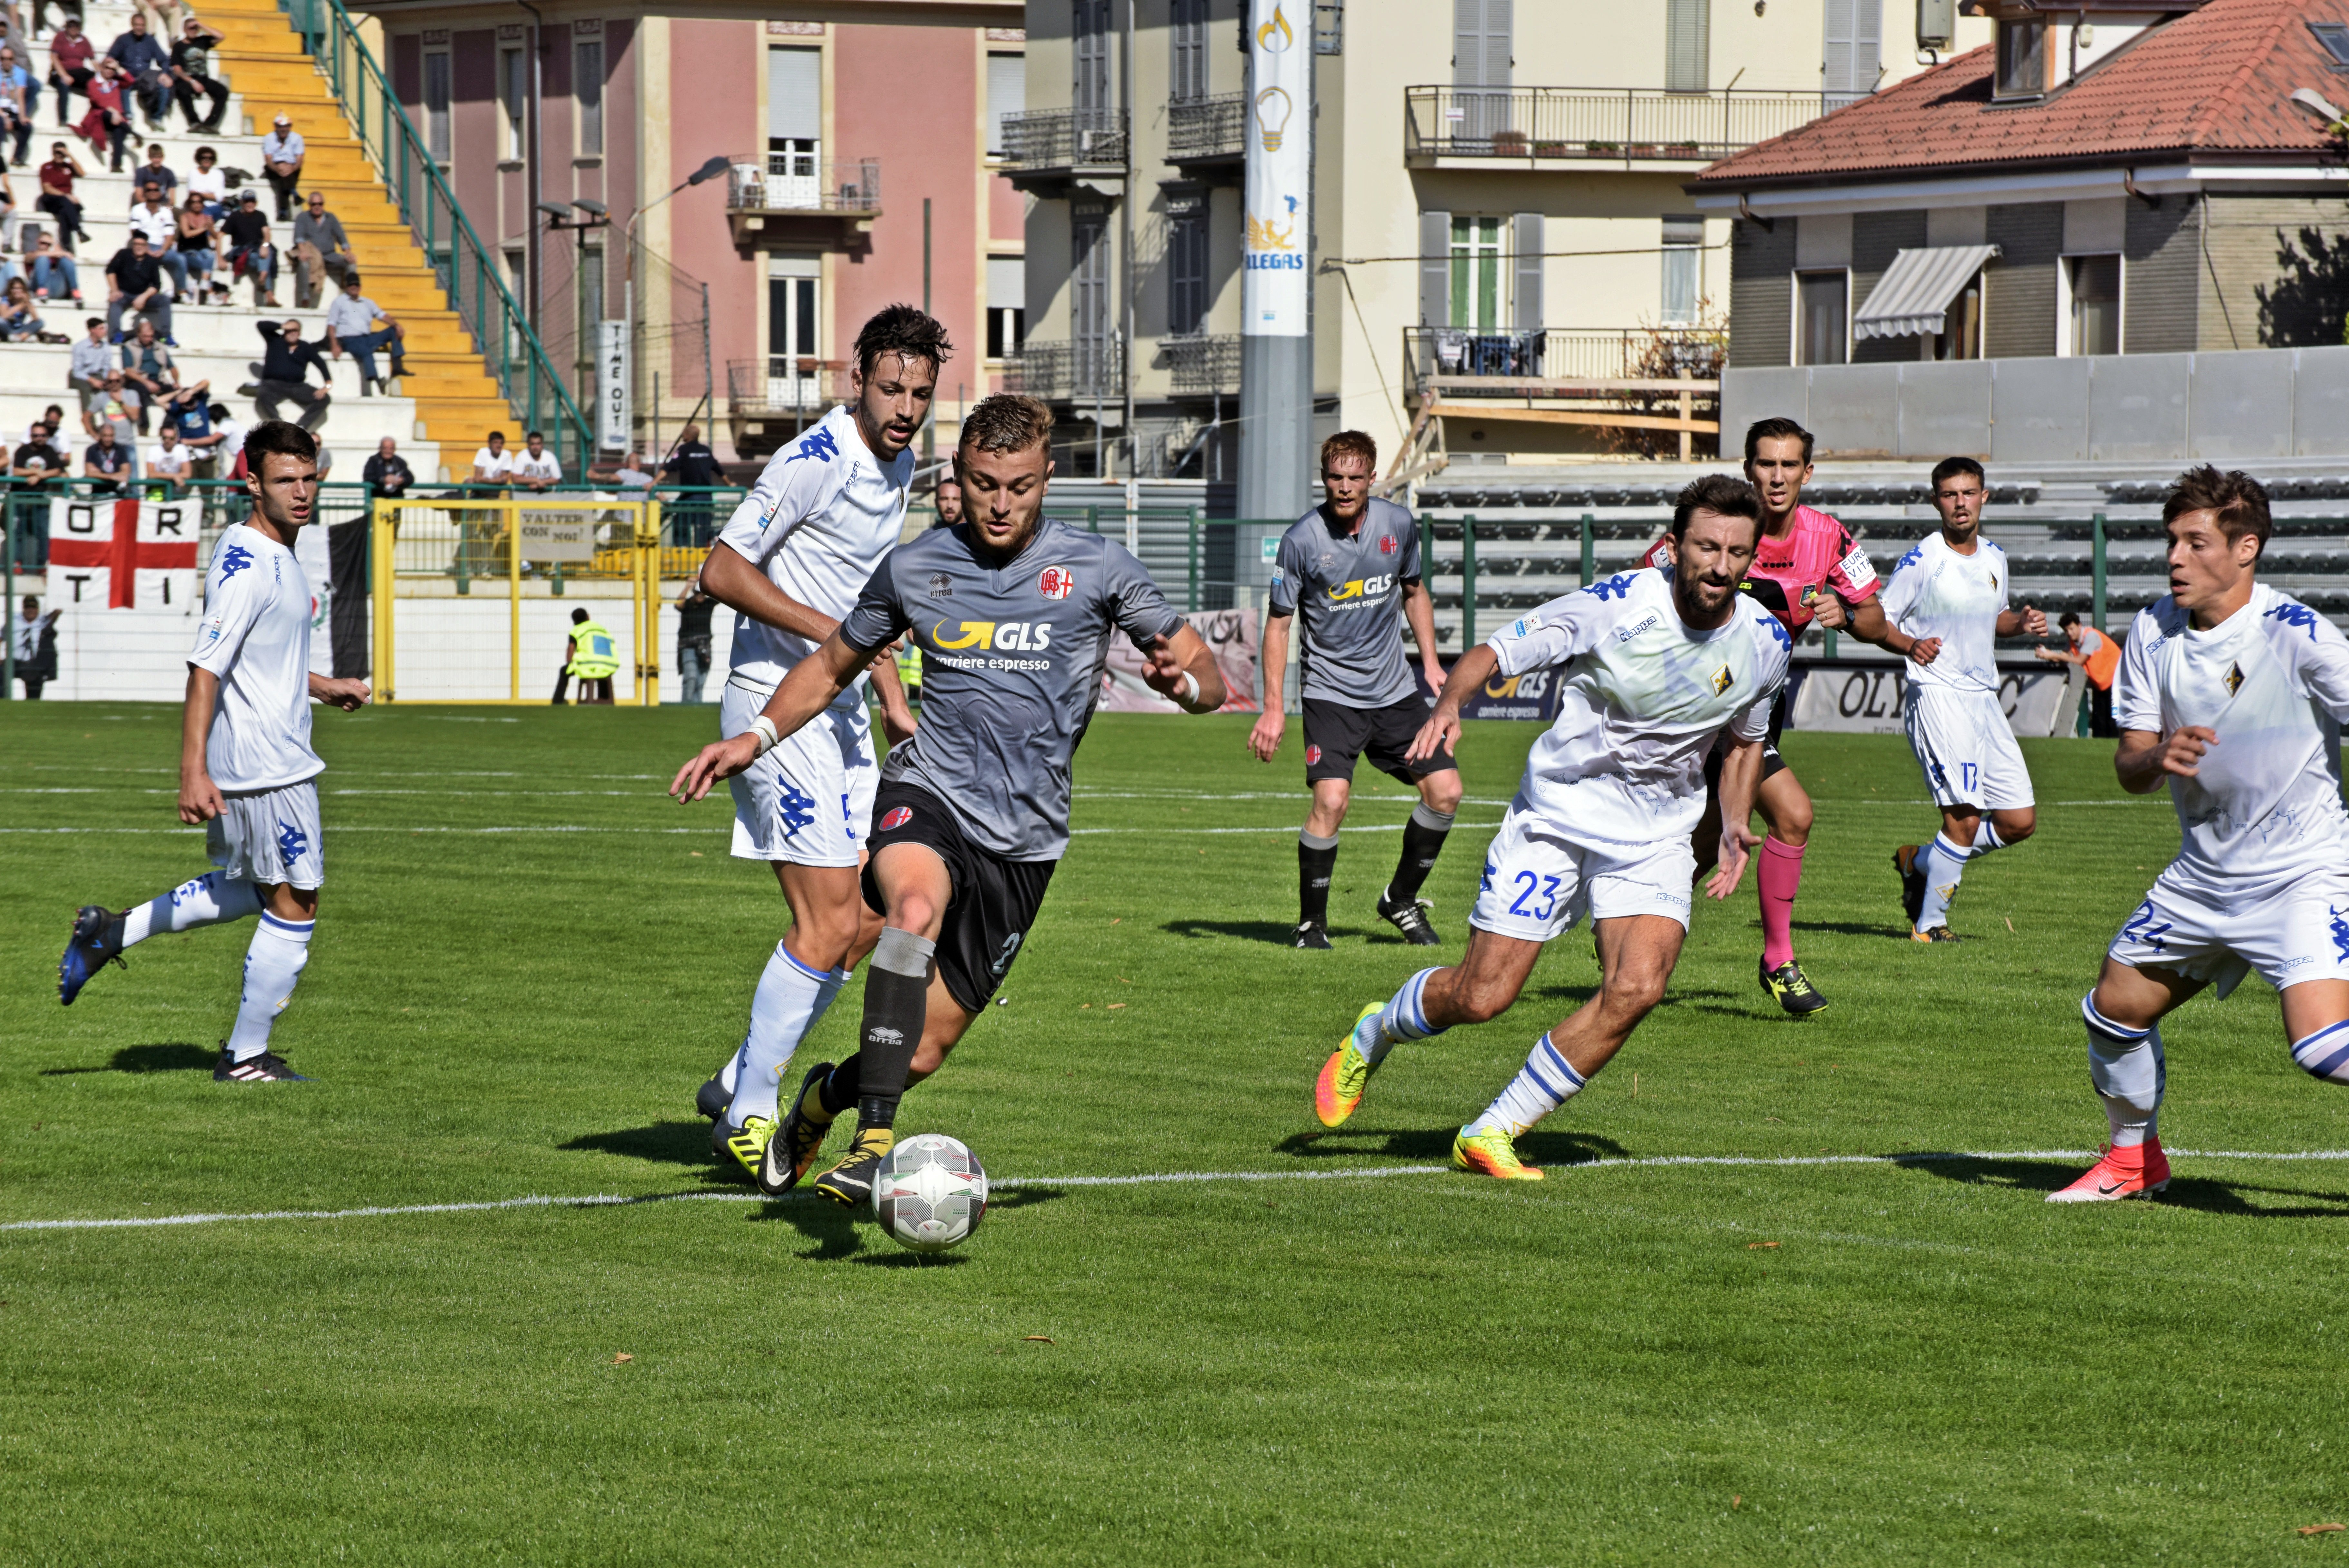 Arzachena-Alessandria 0-0: FINALE